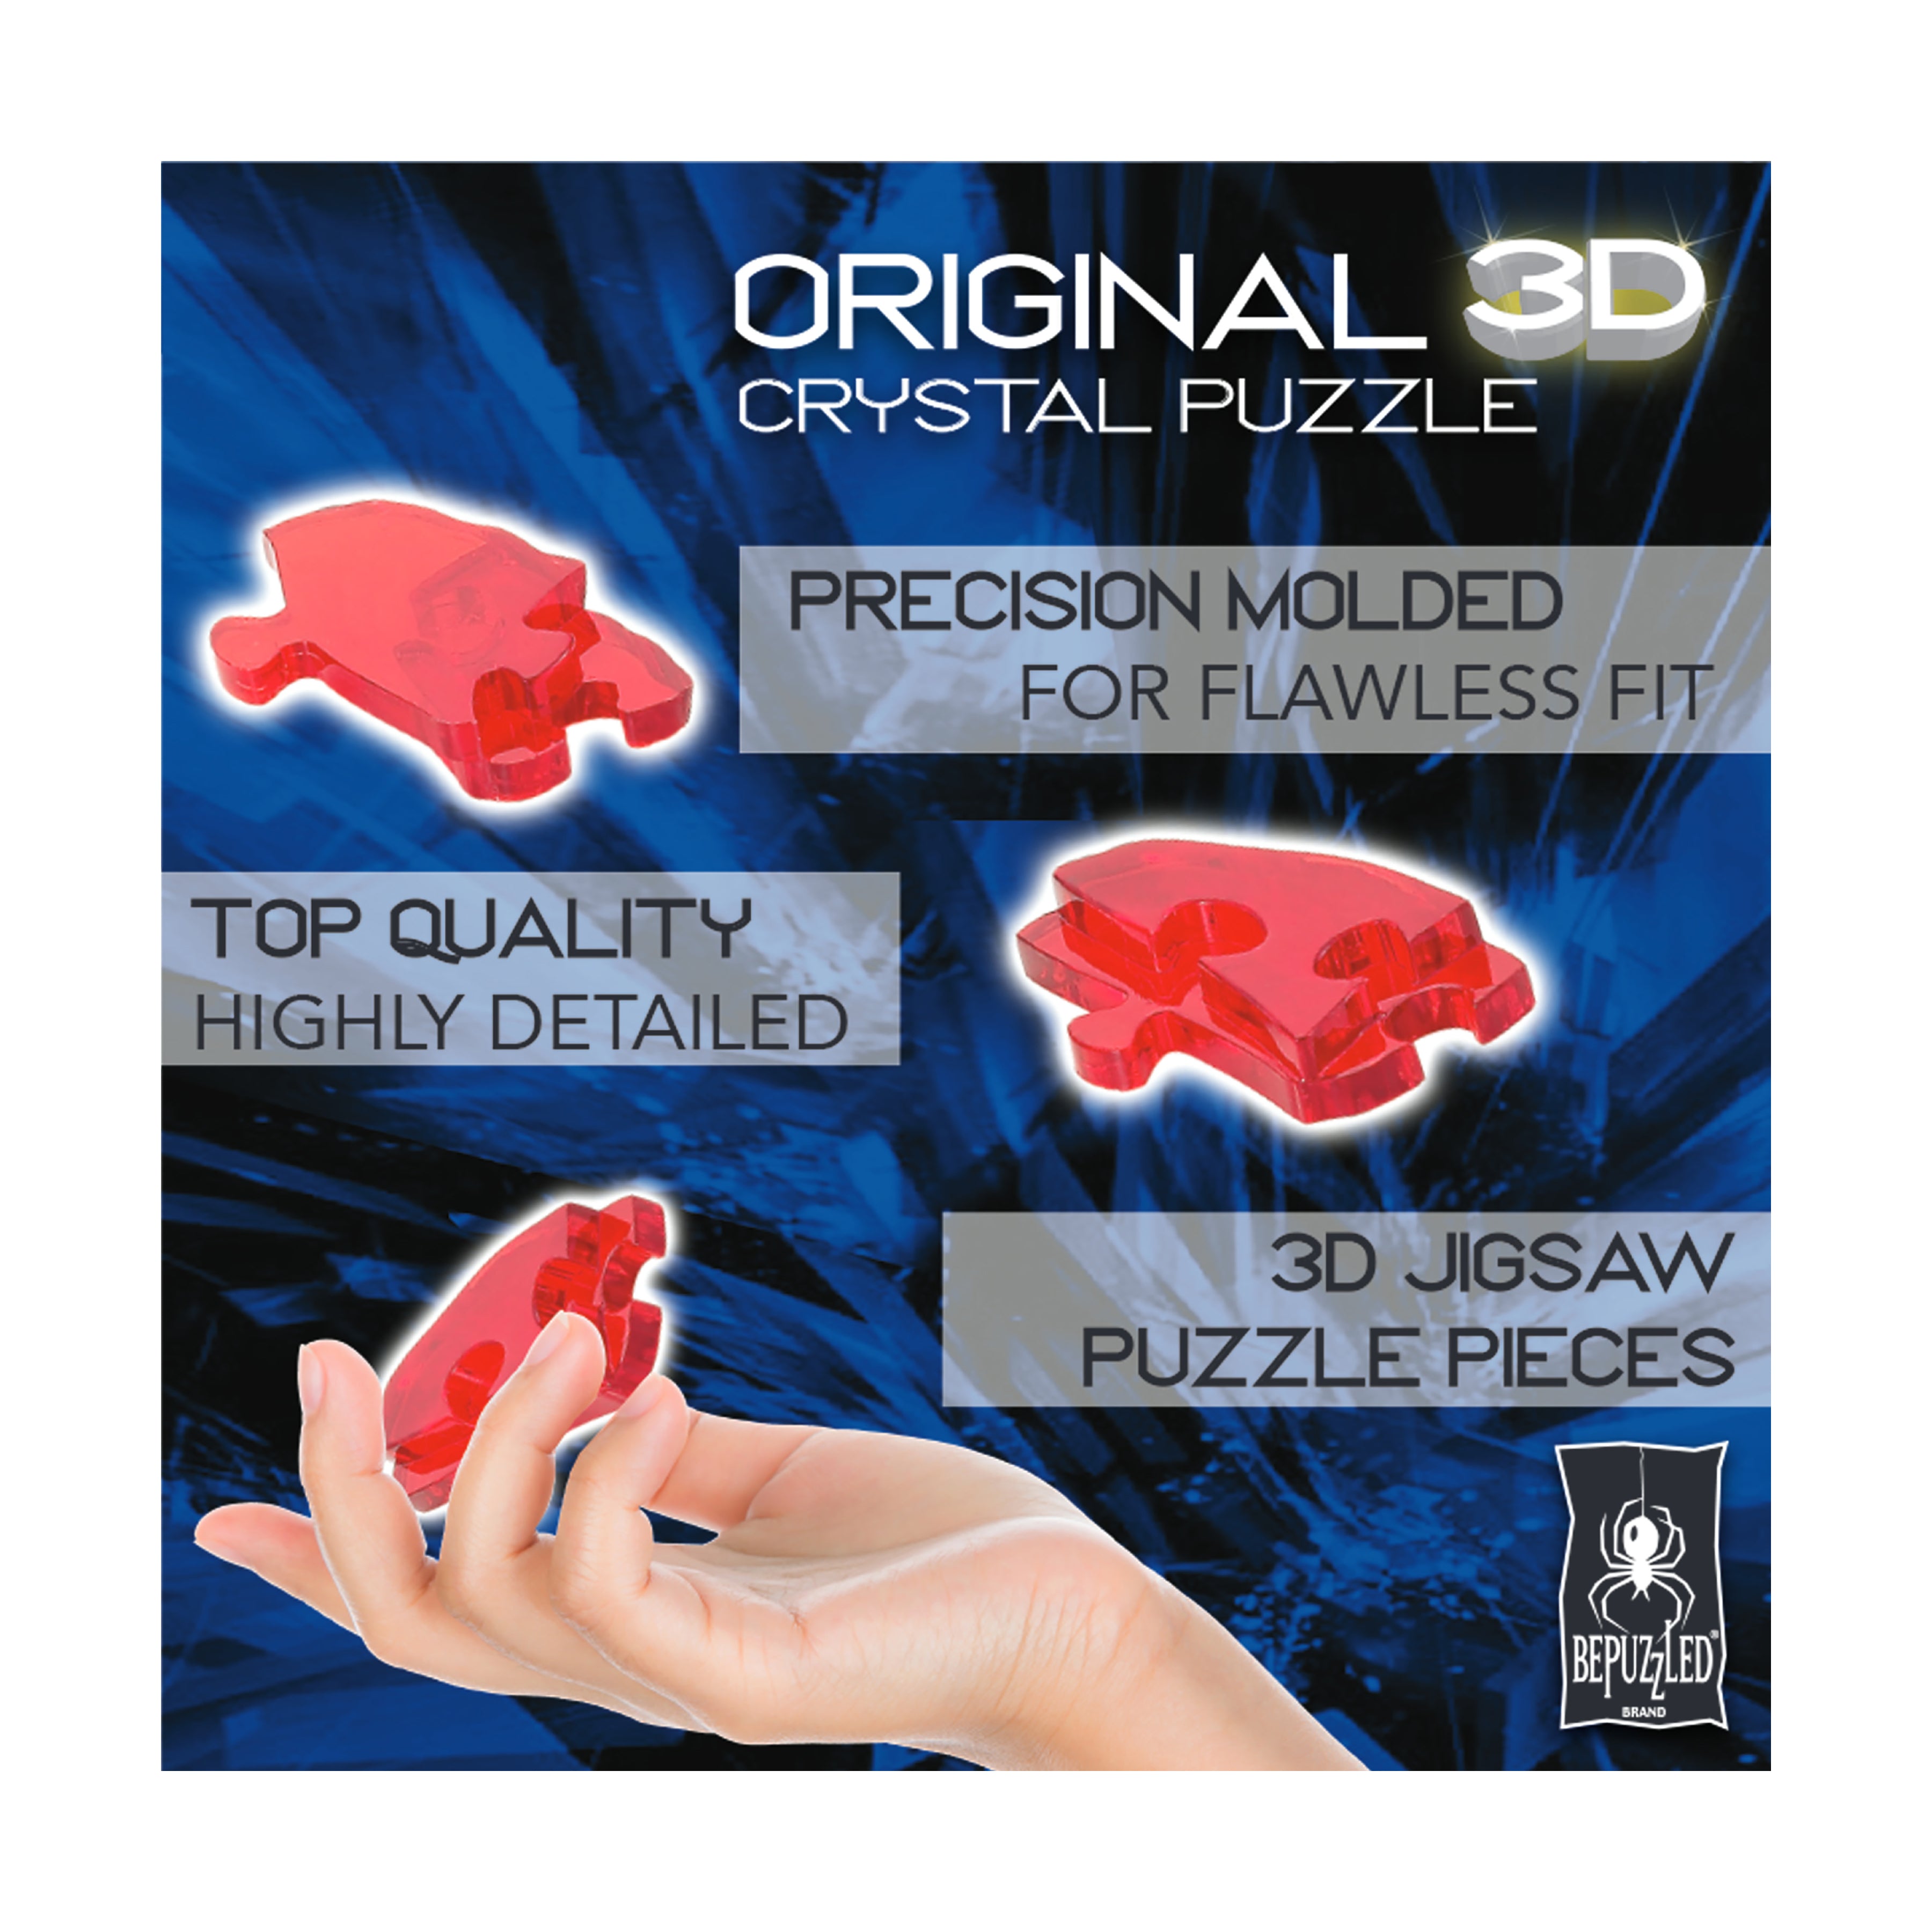 ORIGINAL 3D CRYSTAL PUZZLE DISNEY ARIEL HAS 44 PIECES AGES 12 PLUS